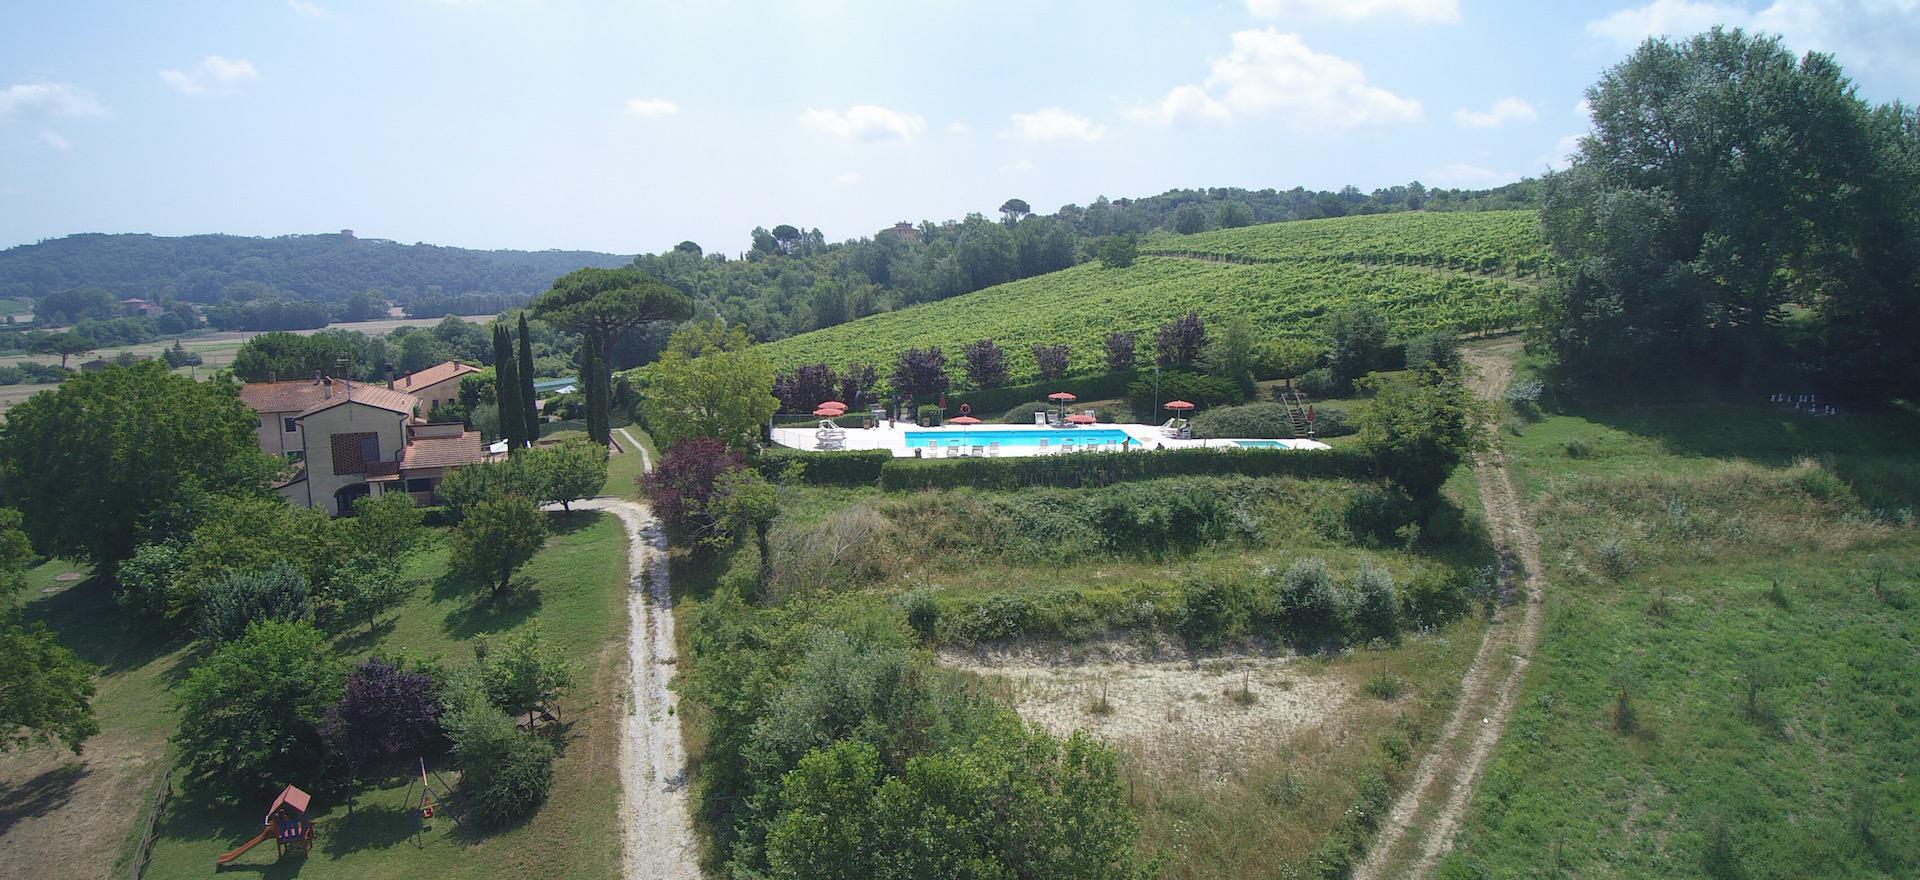 Agriturismo Toskana Agriturismo für Familien mit großem Pool und Kinderbecken